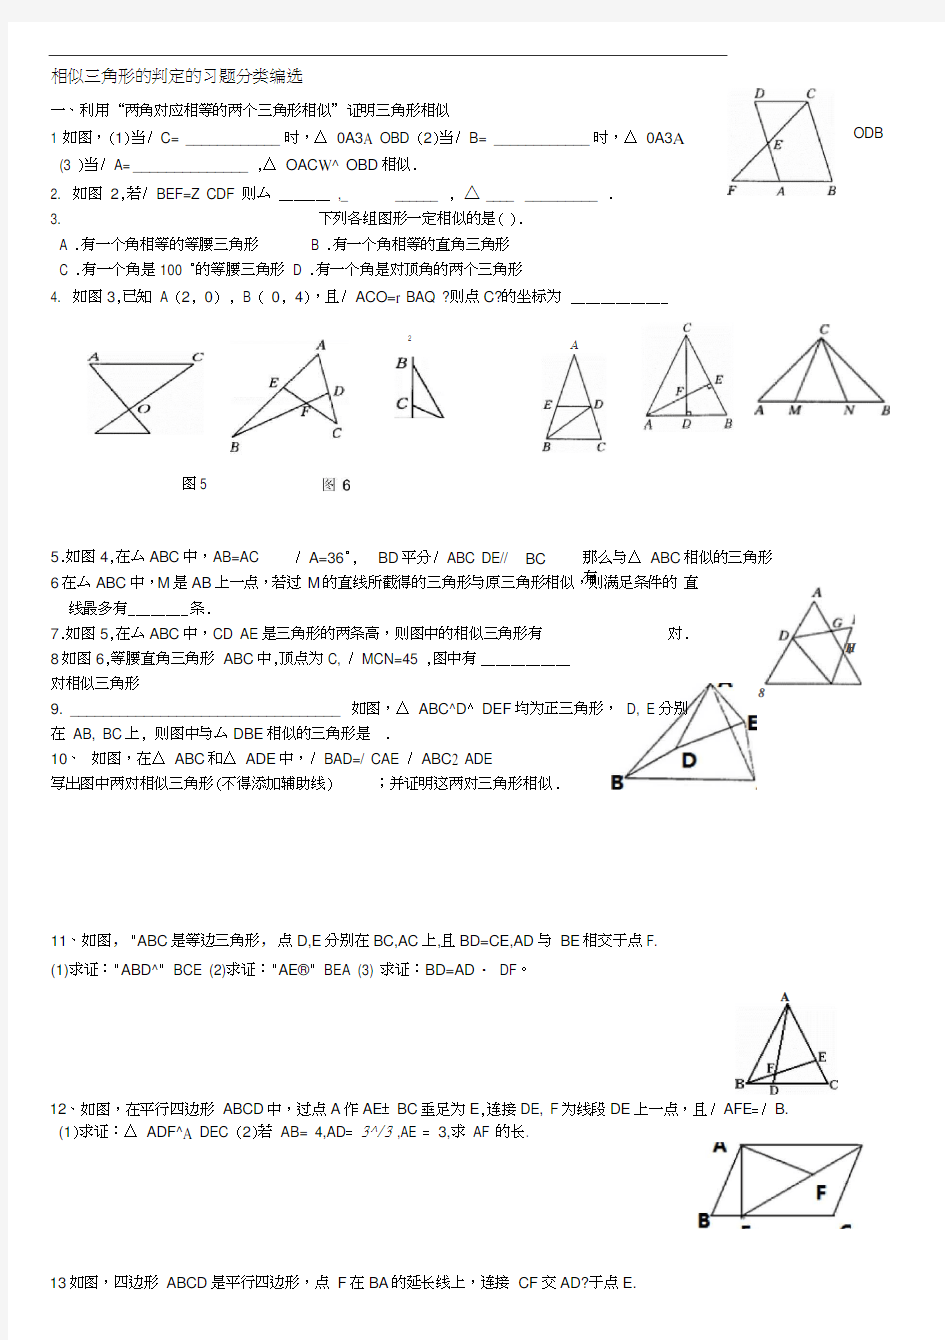 相似三角形的判定分类习题集